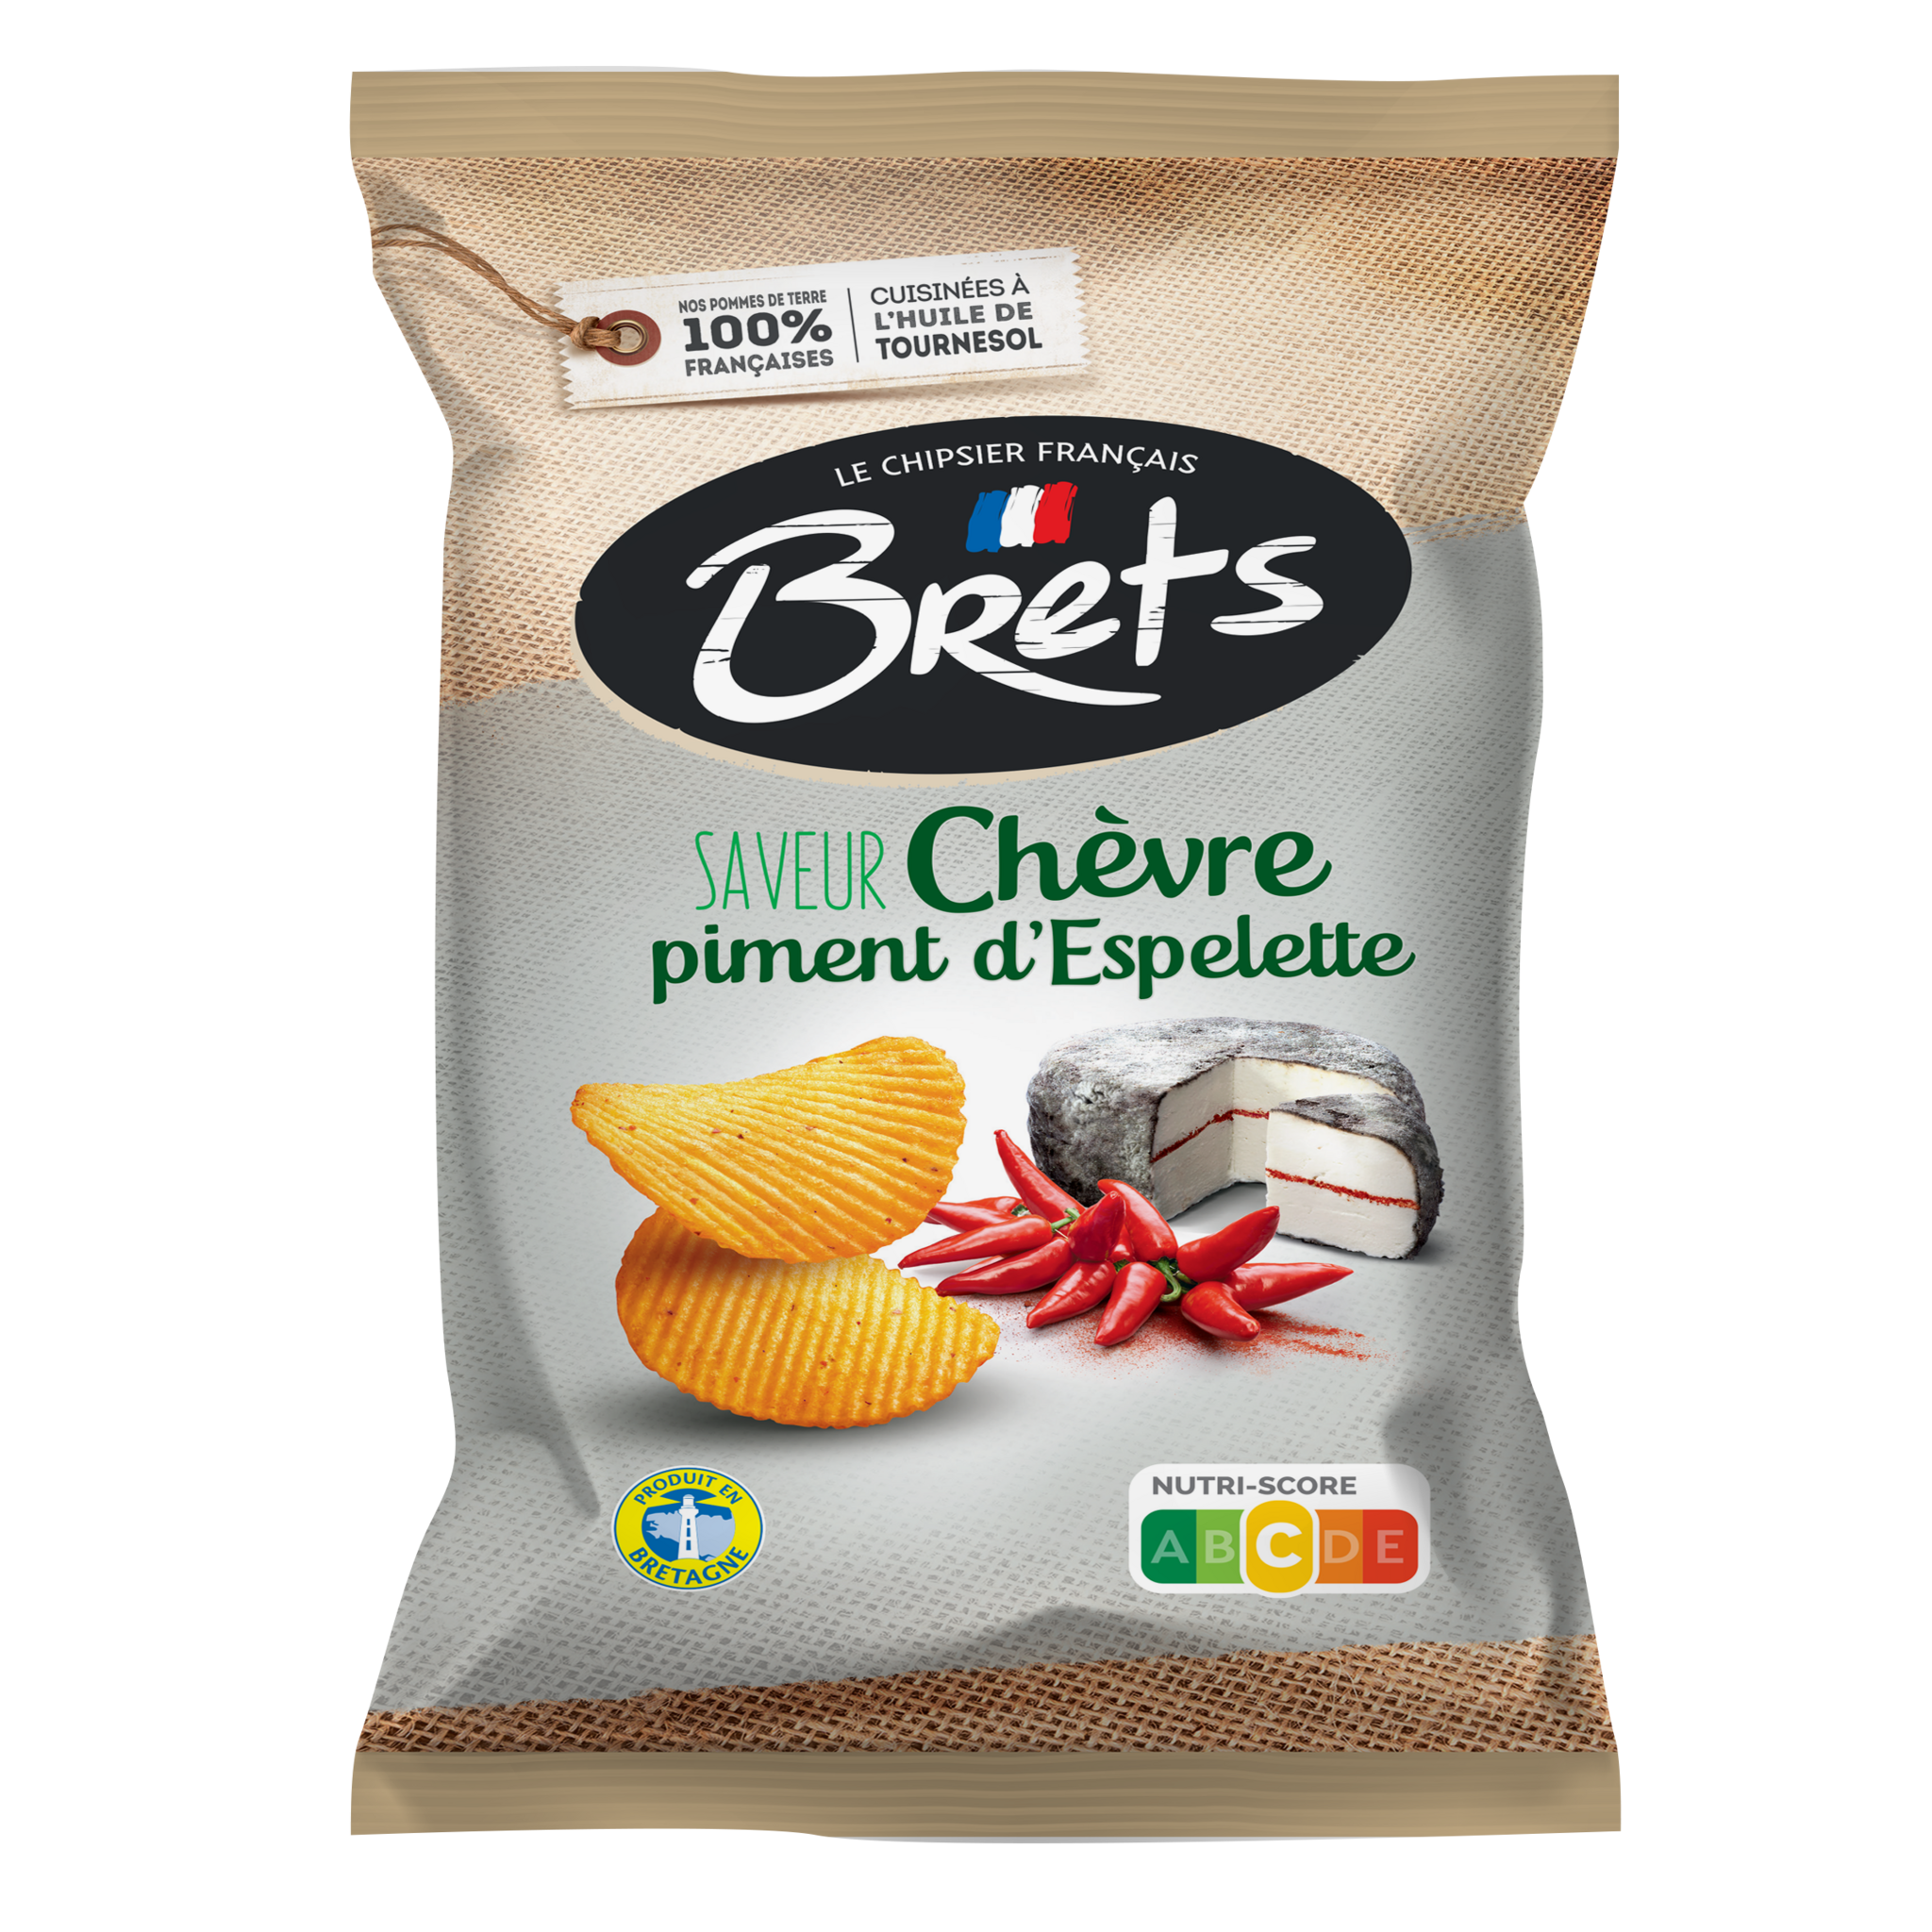 Chips ondulées au vinaigre, Bret's (125 g)